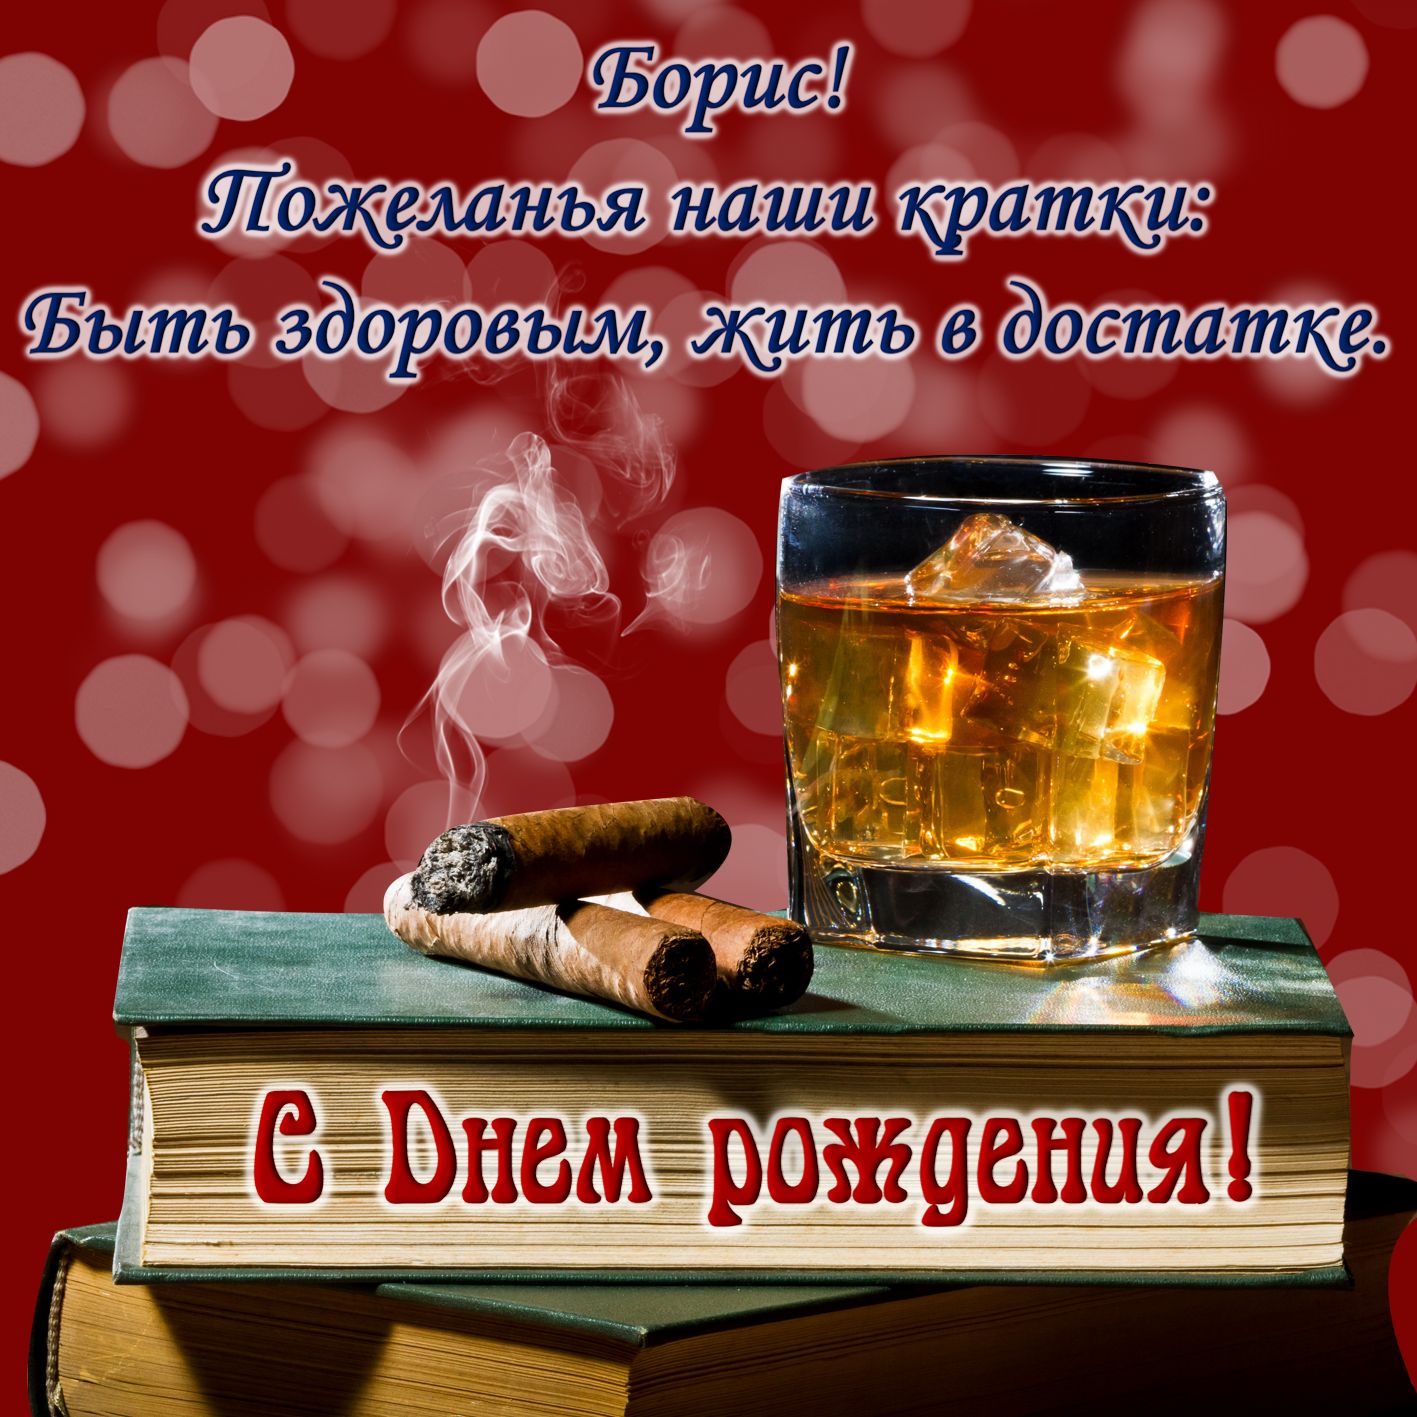 Открытка - виски и сигары Борису на День рождения